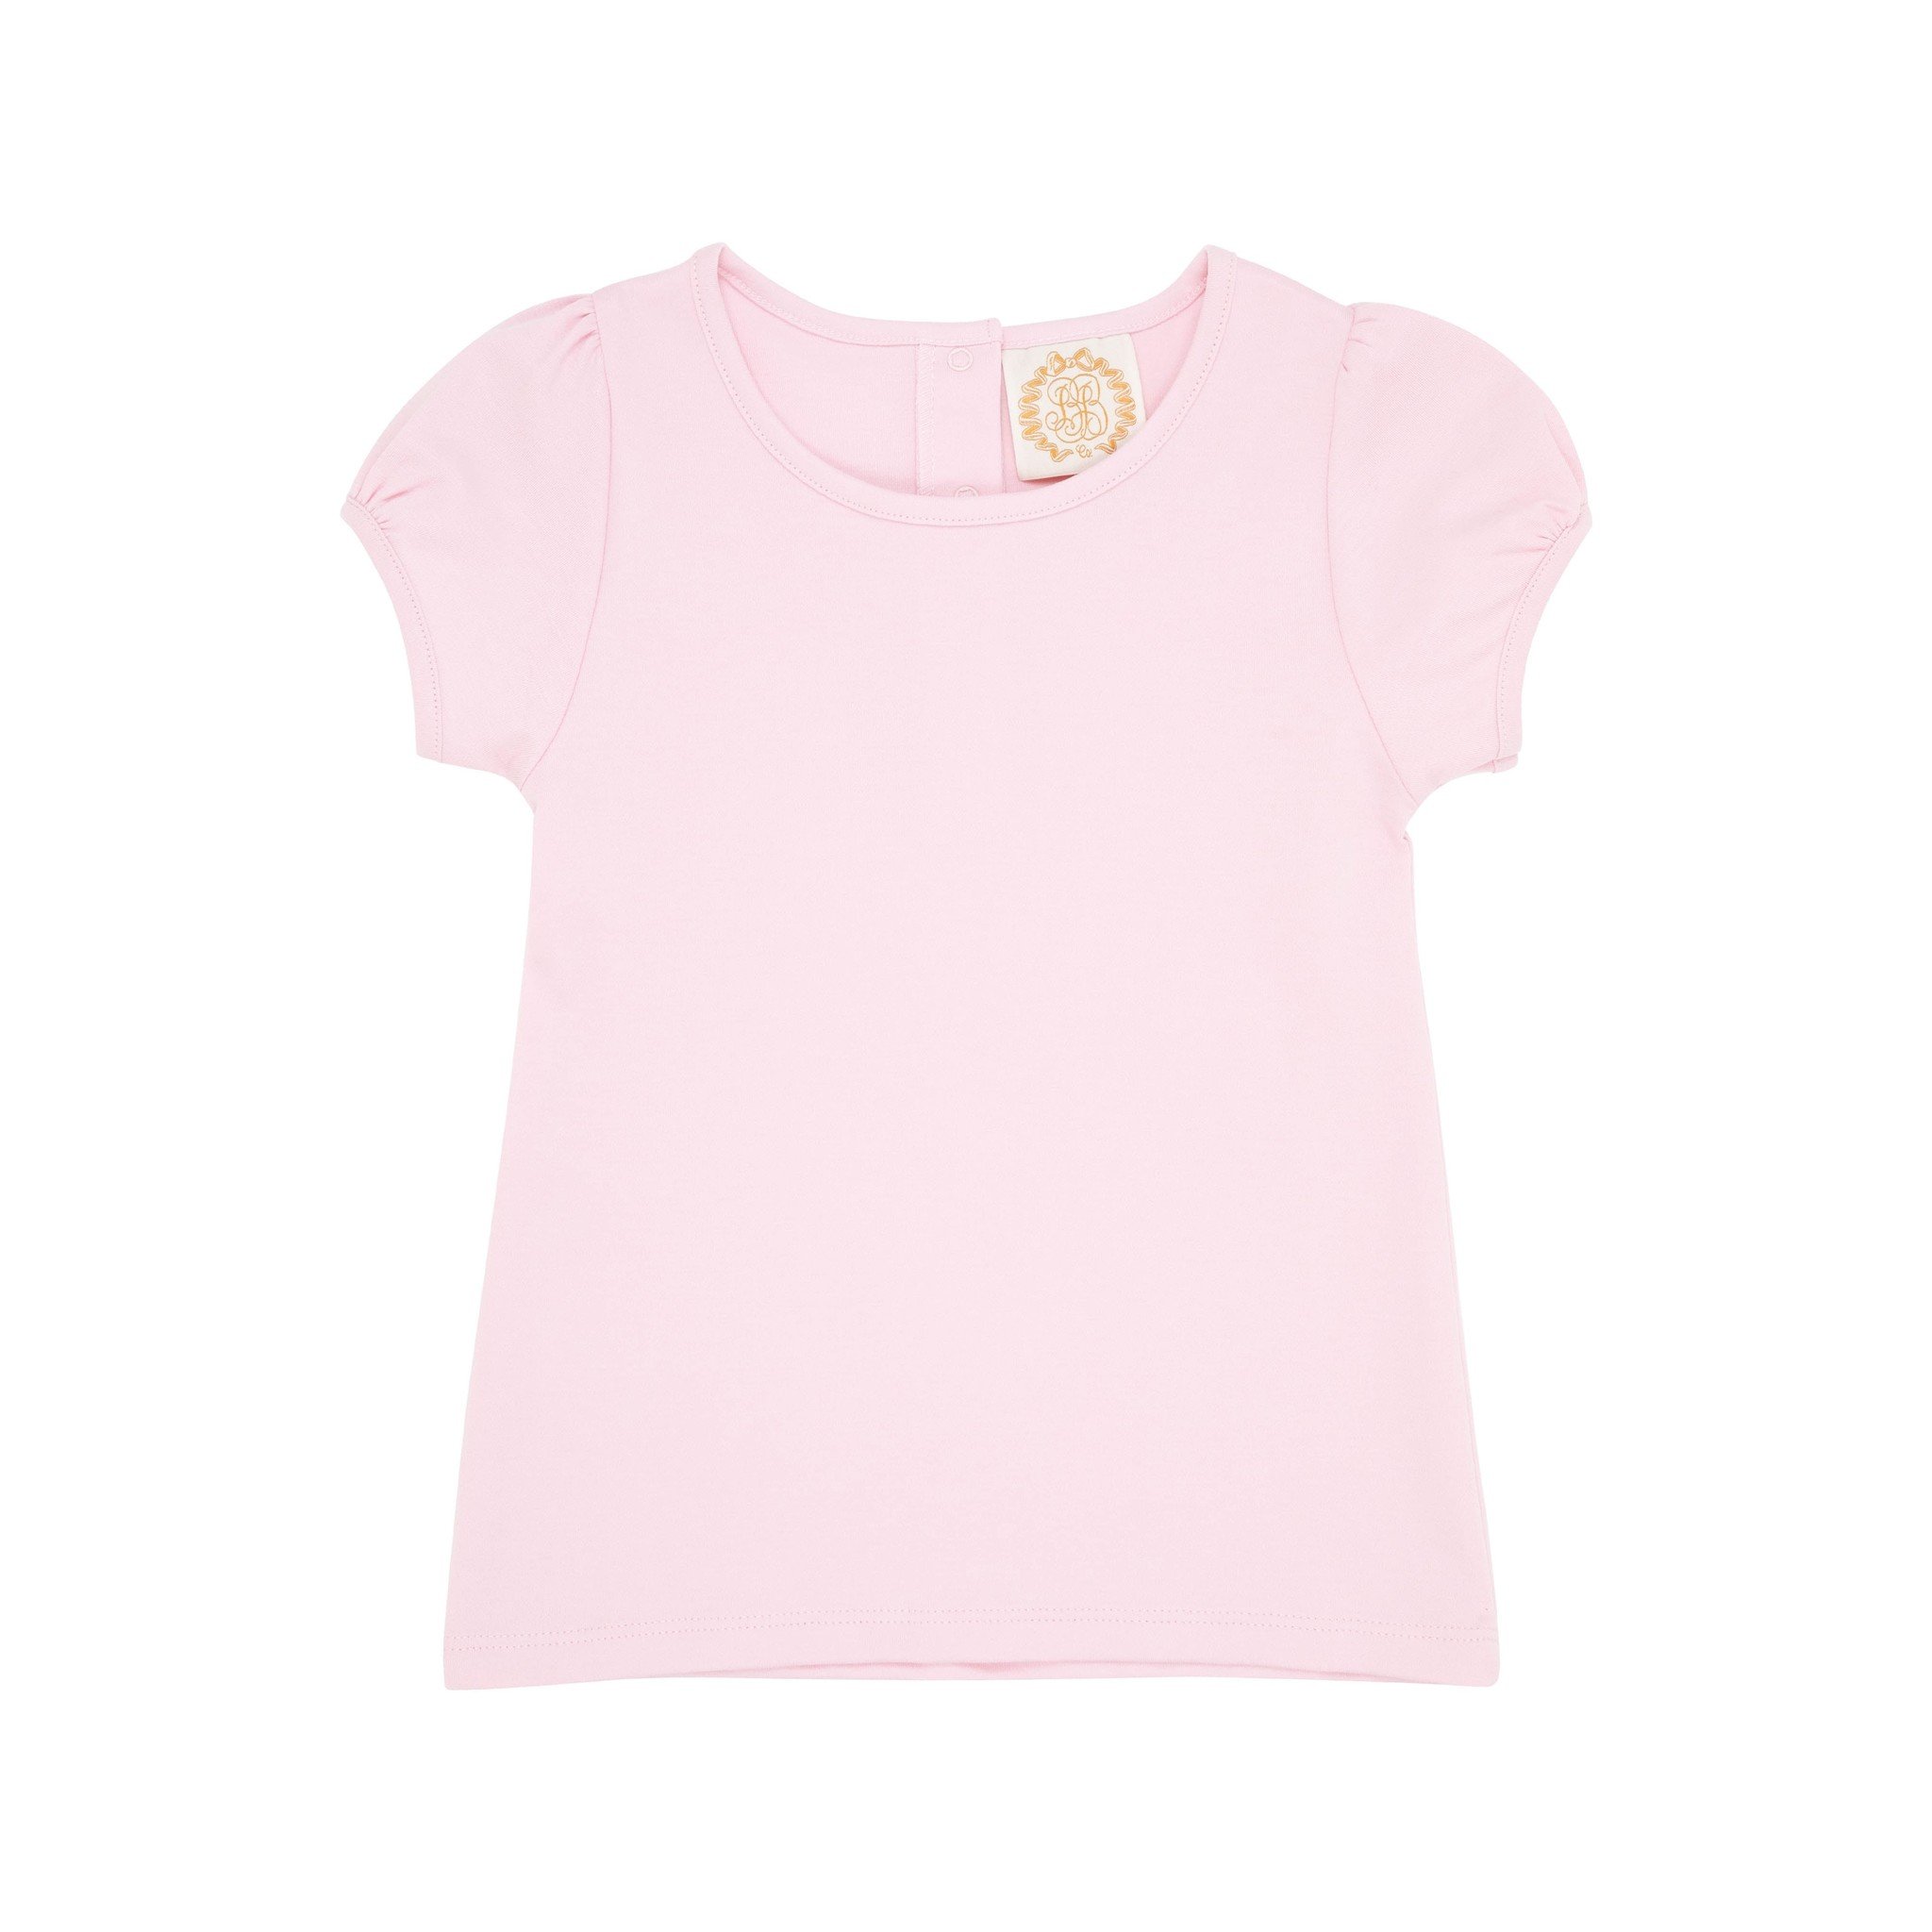 Beaufort Bonnet Palm Pink Penny's Play Shirt